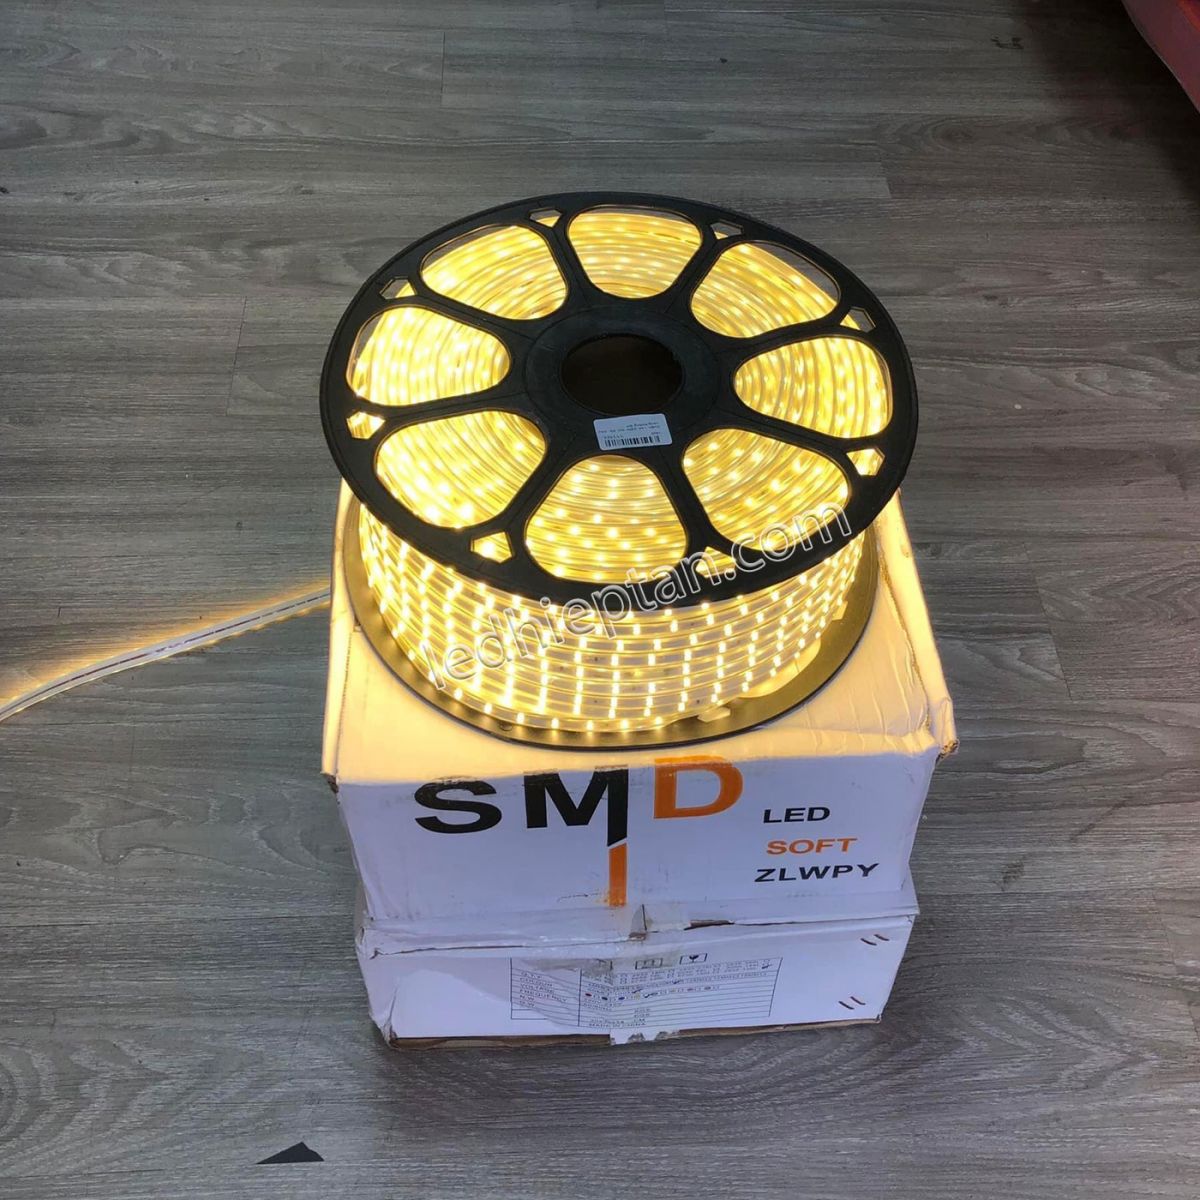 Cuộn LED 220V tim đôi màu vàng nắng